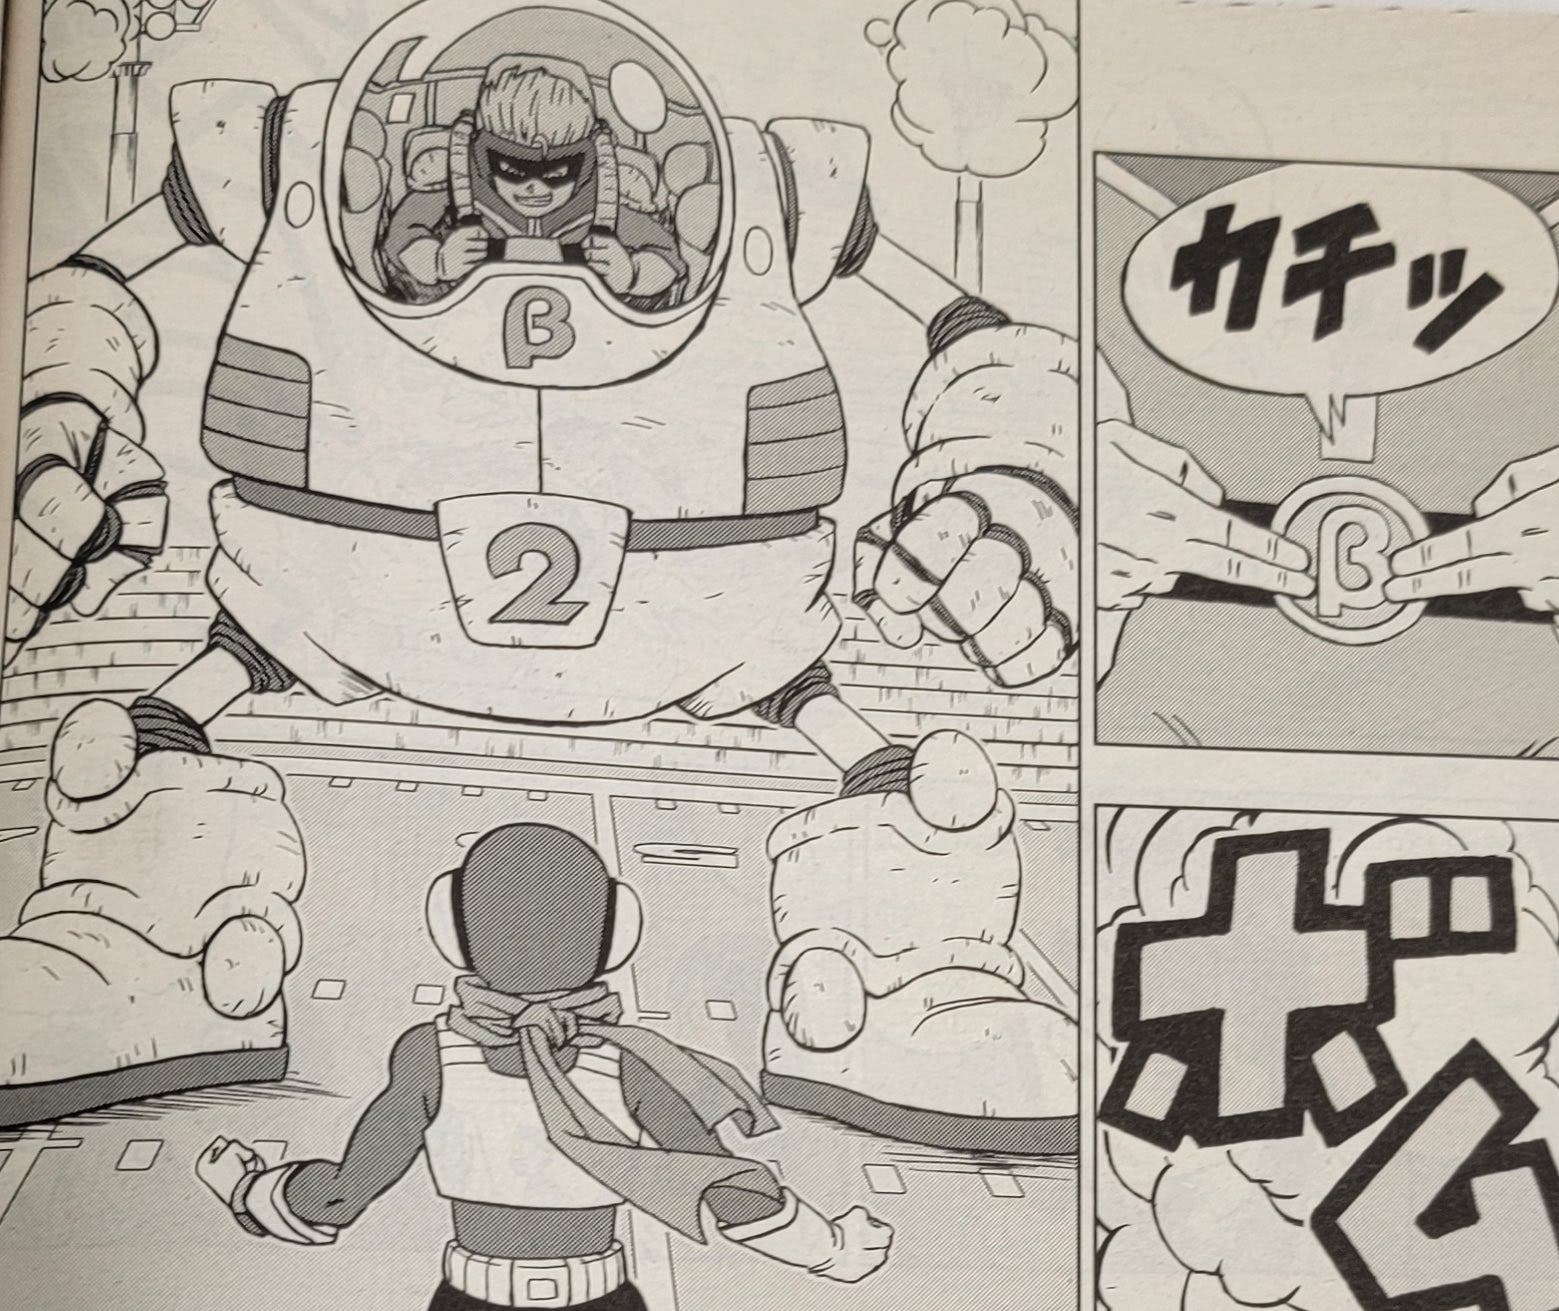 Dragon Ball Super Manga 89: ¡El capítulo completo en Español ! - No te  pierdas AL DETALLE!